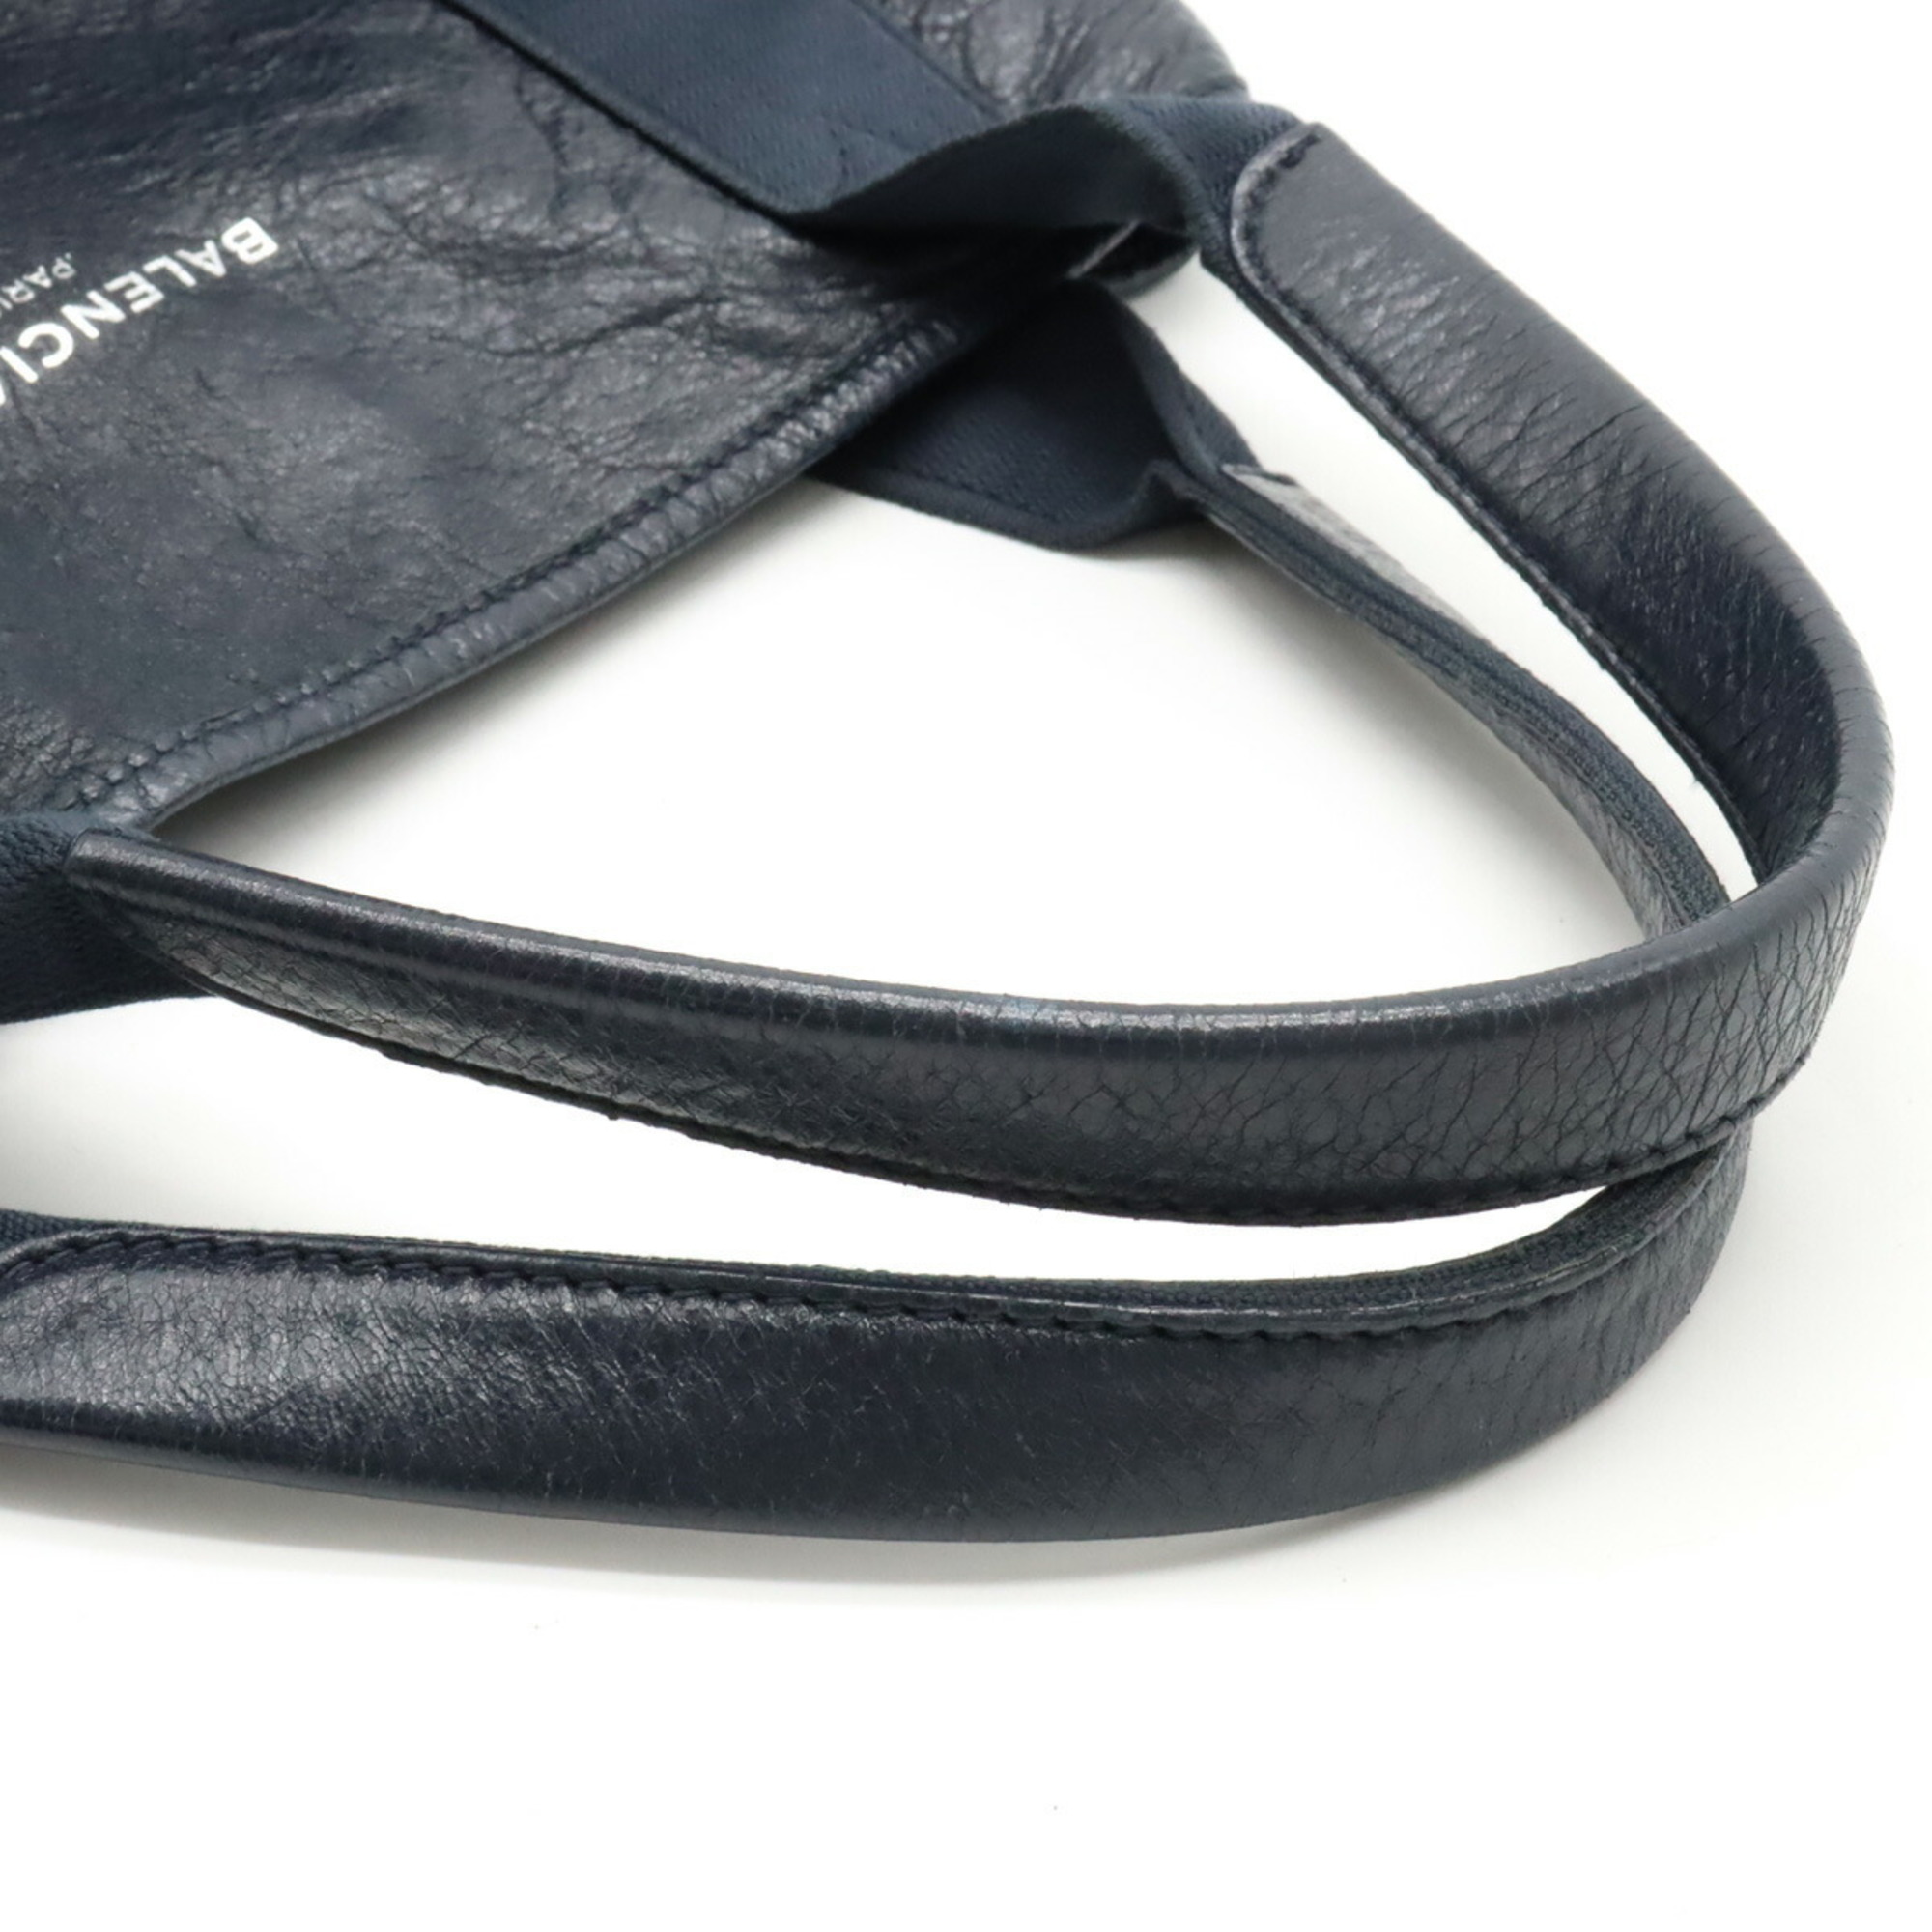 Balenciaga 339933 Women's Leather Handbag,Tote Bag Navy